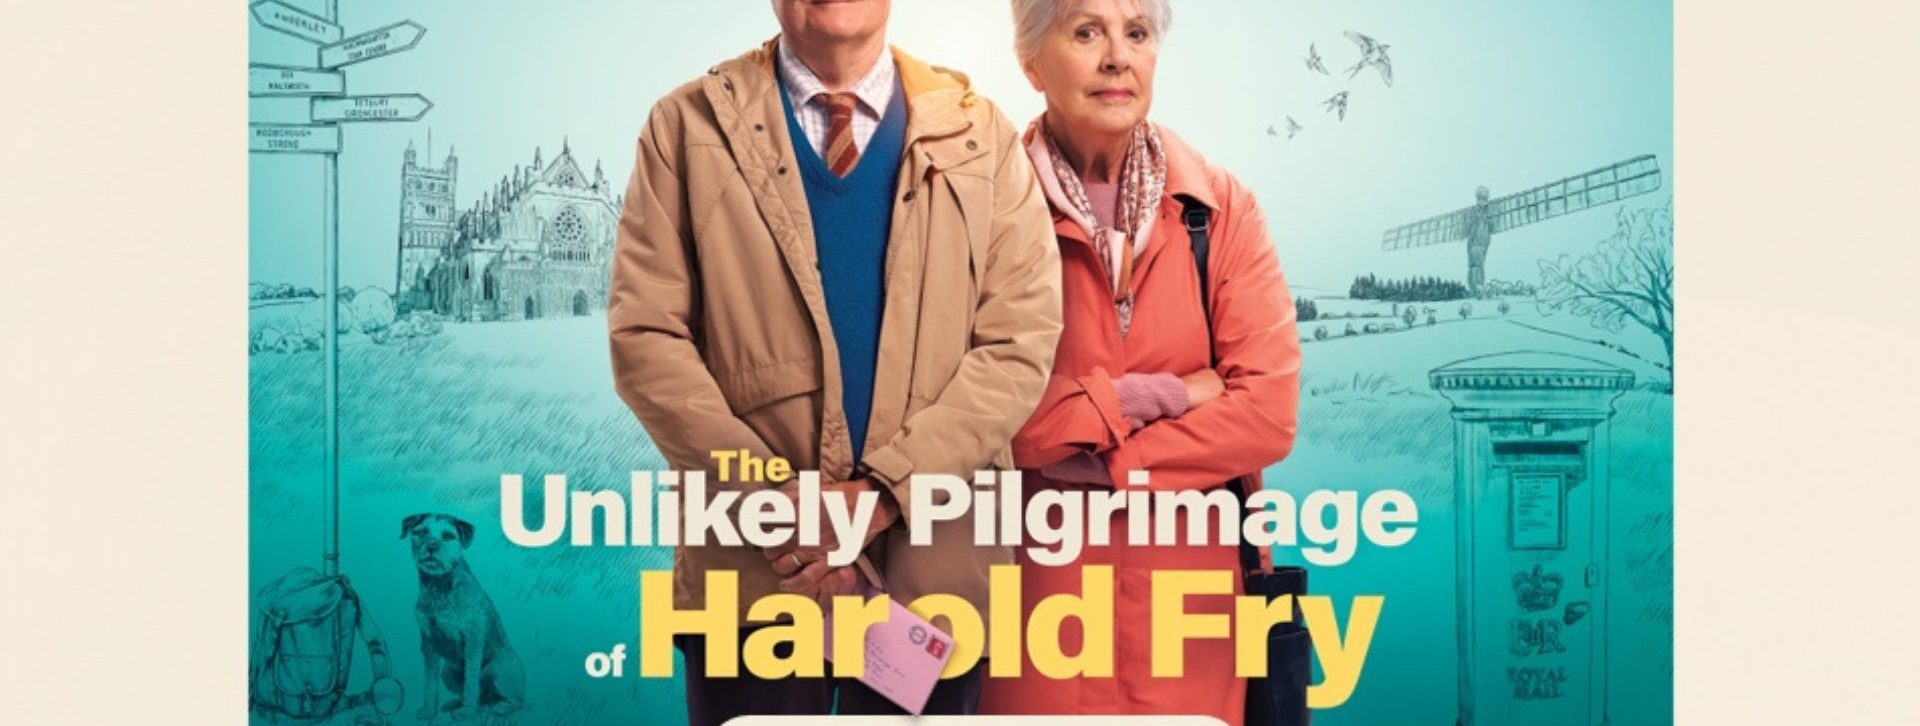 Silver Screening: The Unlikely Pilgrimage of Harold Fry